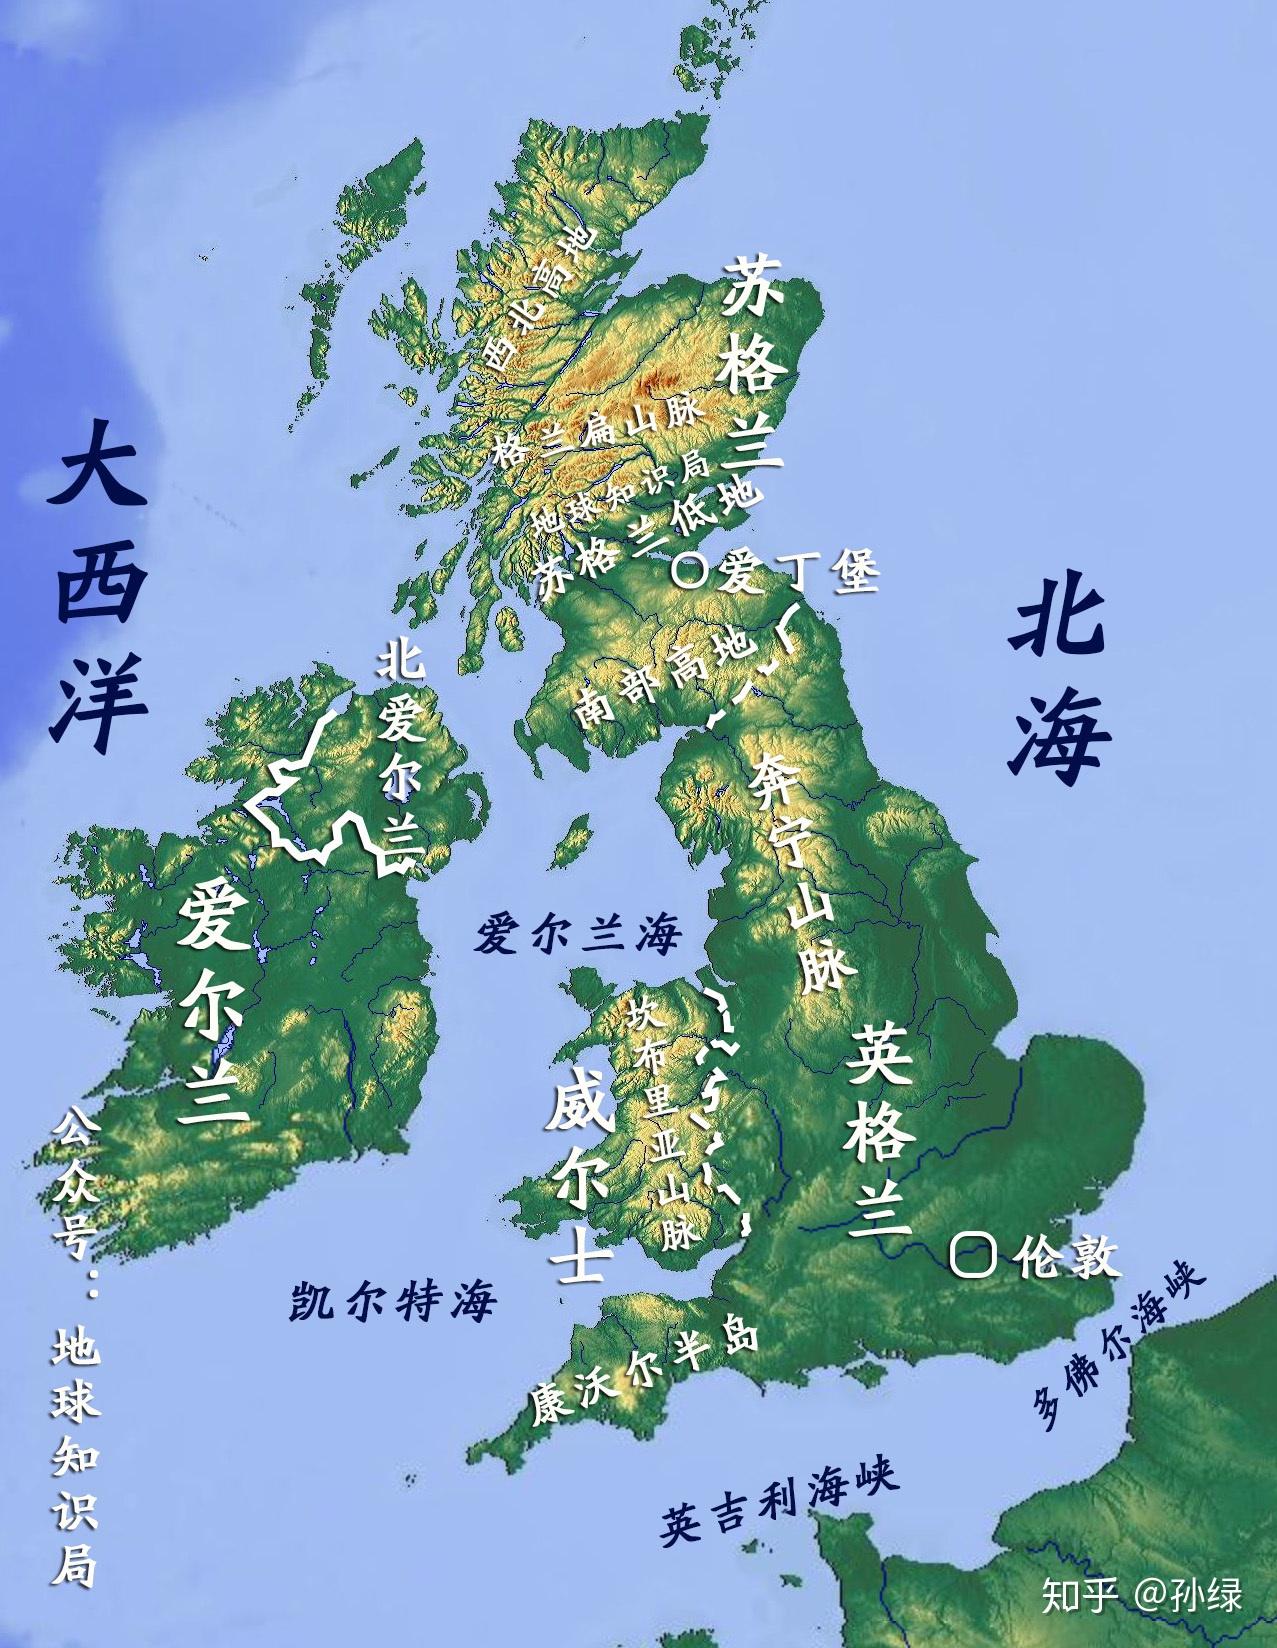 英国的河流地图图片